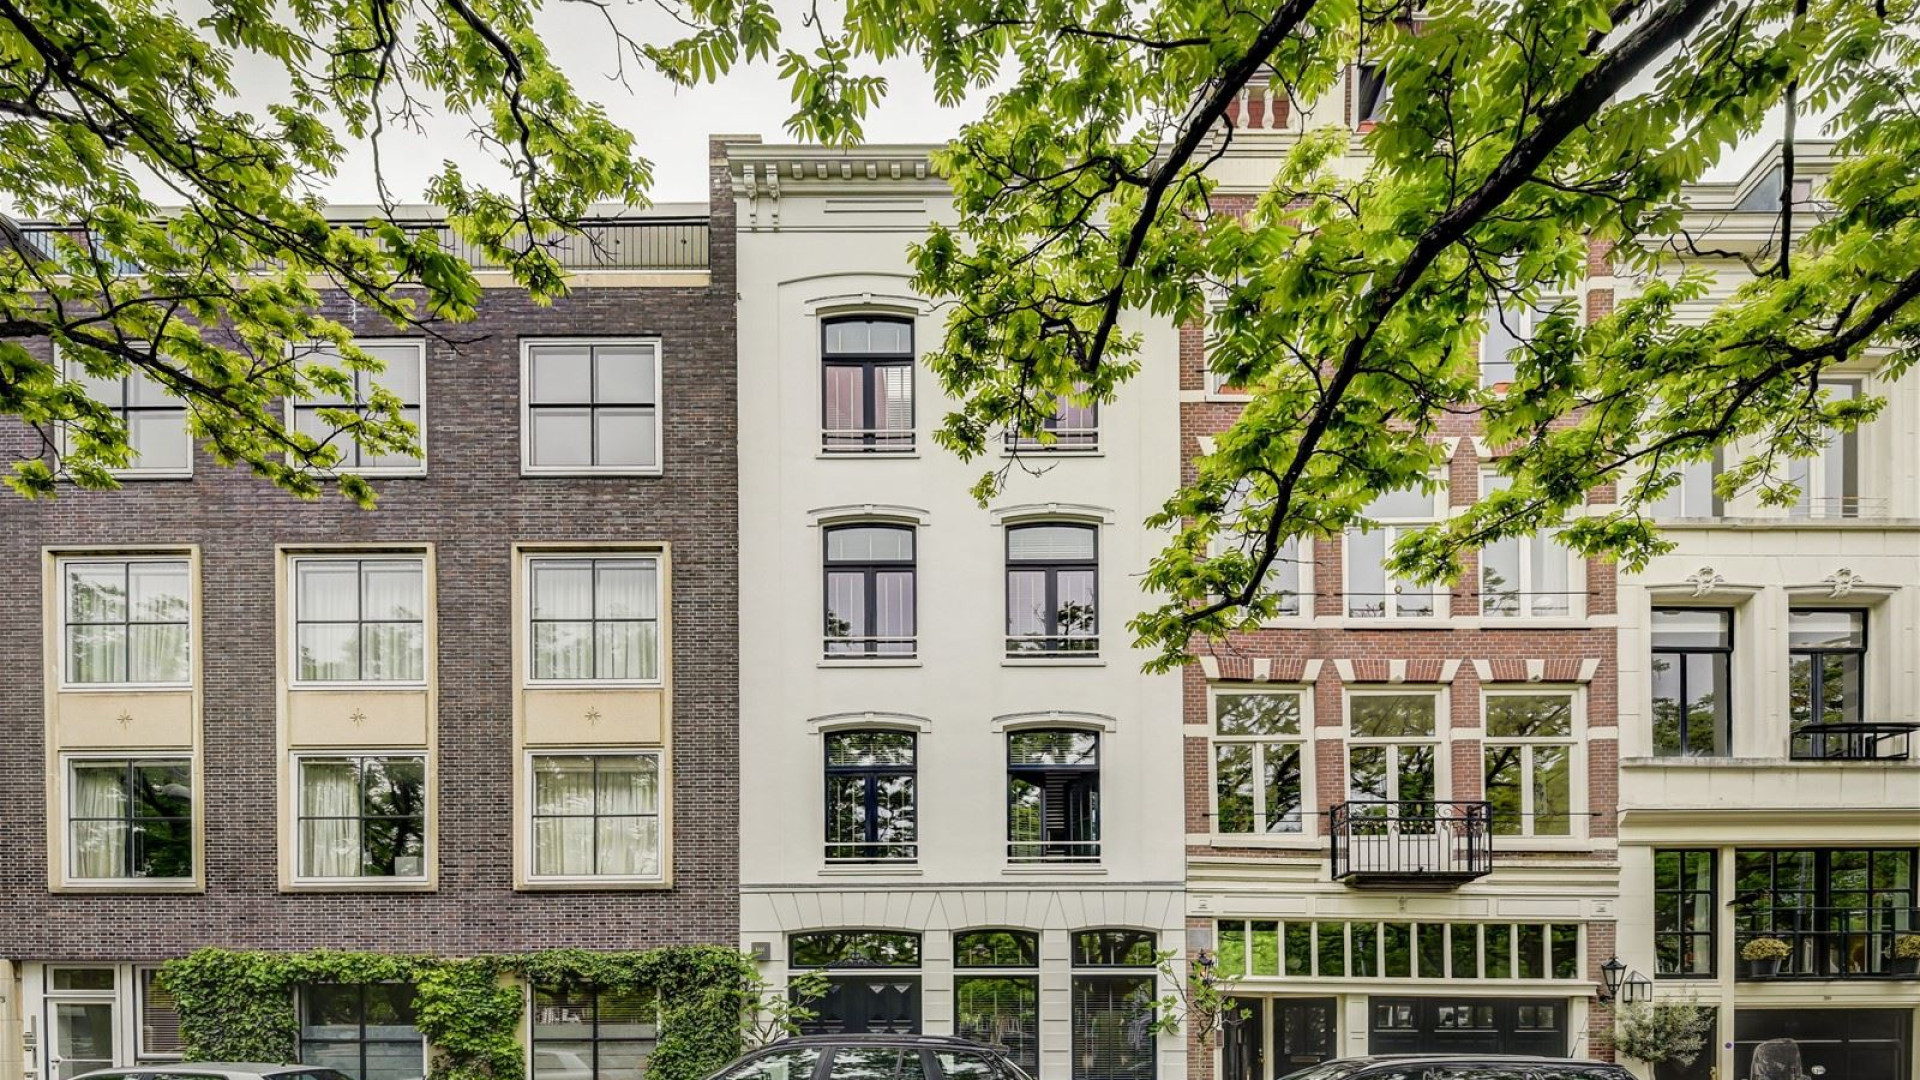 Youp van 't Hek koopt miljoenen euro's kostende stadsvilla in Amsterdam Centrum. Zie foto's. 2